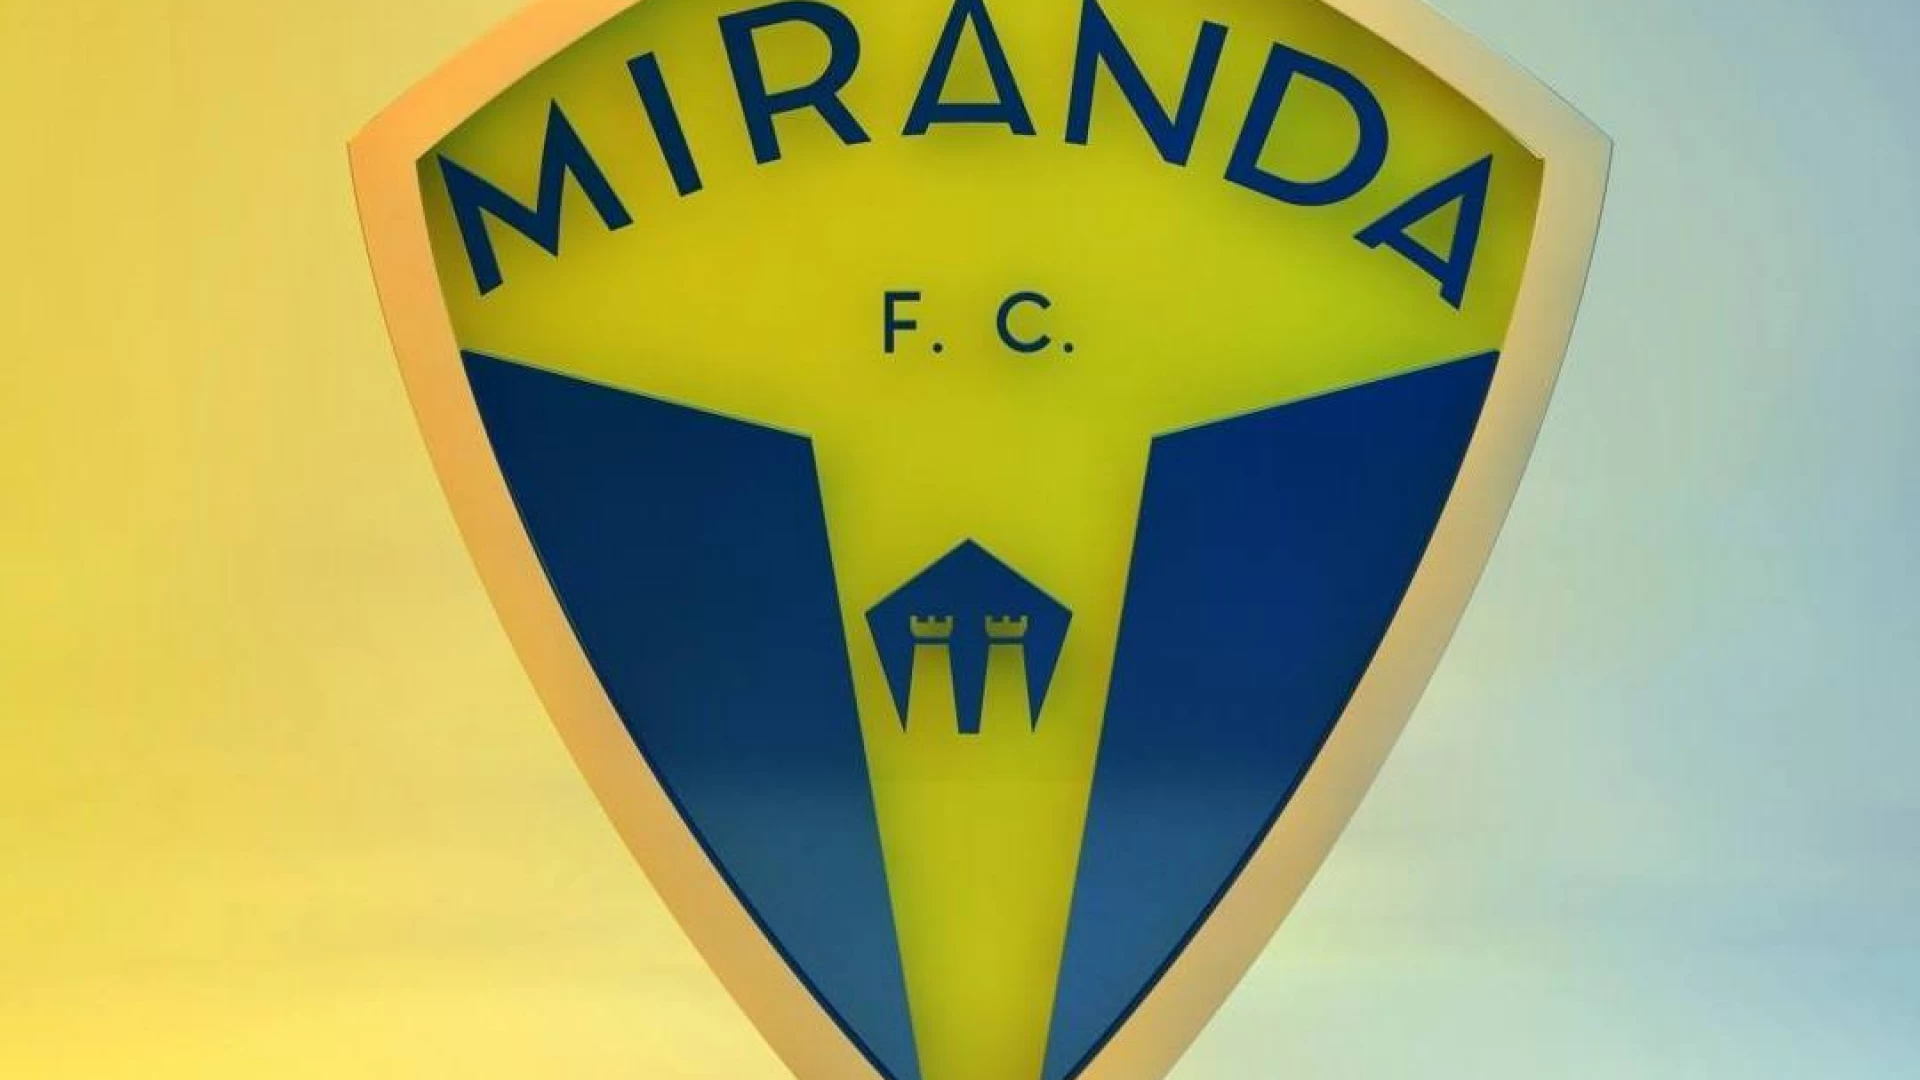 Il Miranda F.c. dal calcio a 11 passa al calcio a 5 anche con la maschile. Il presidente Del Monaco: “Una nuova avventura nel nostro palazzetto dello Sport”.